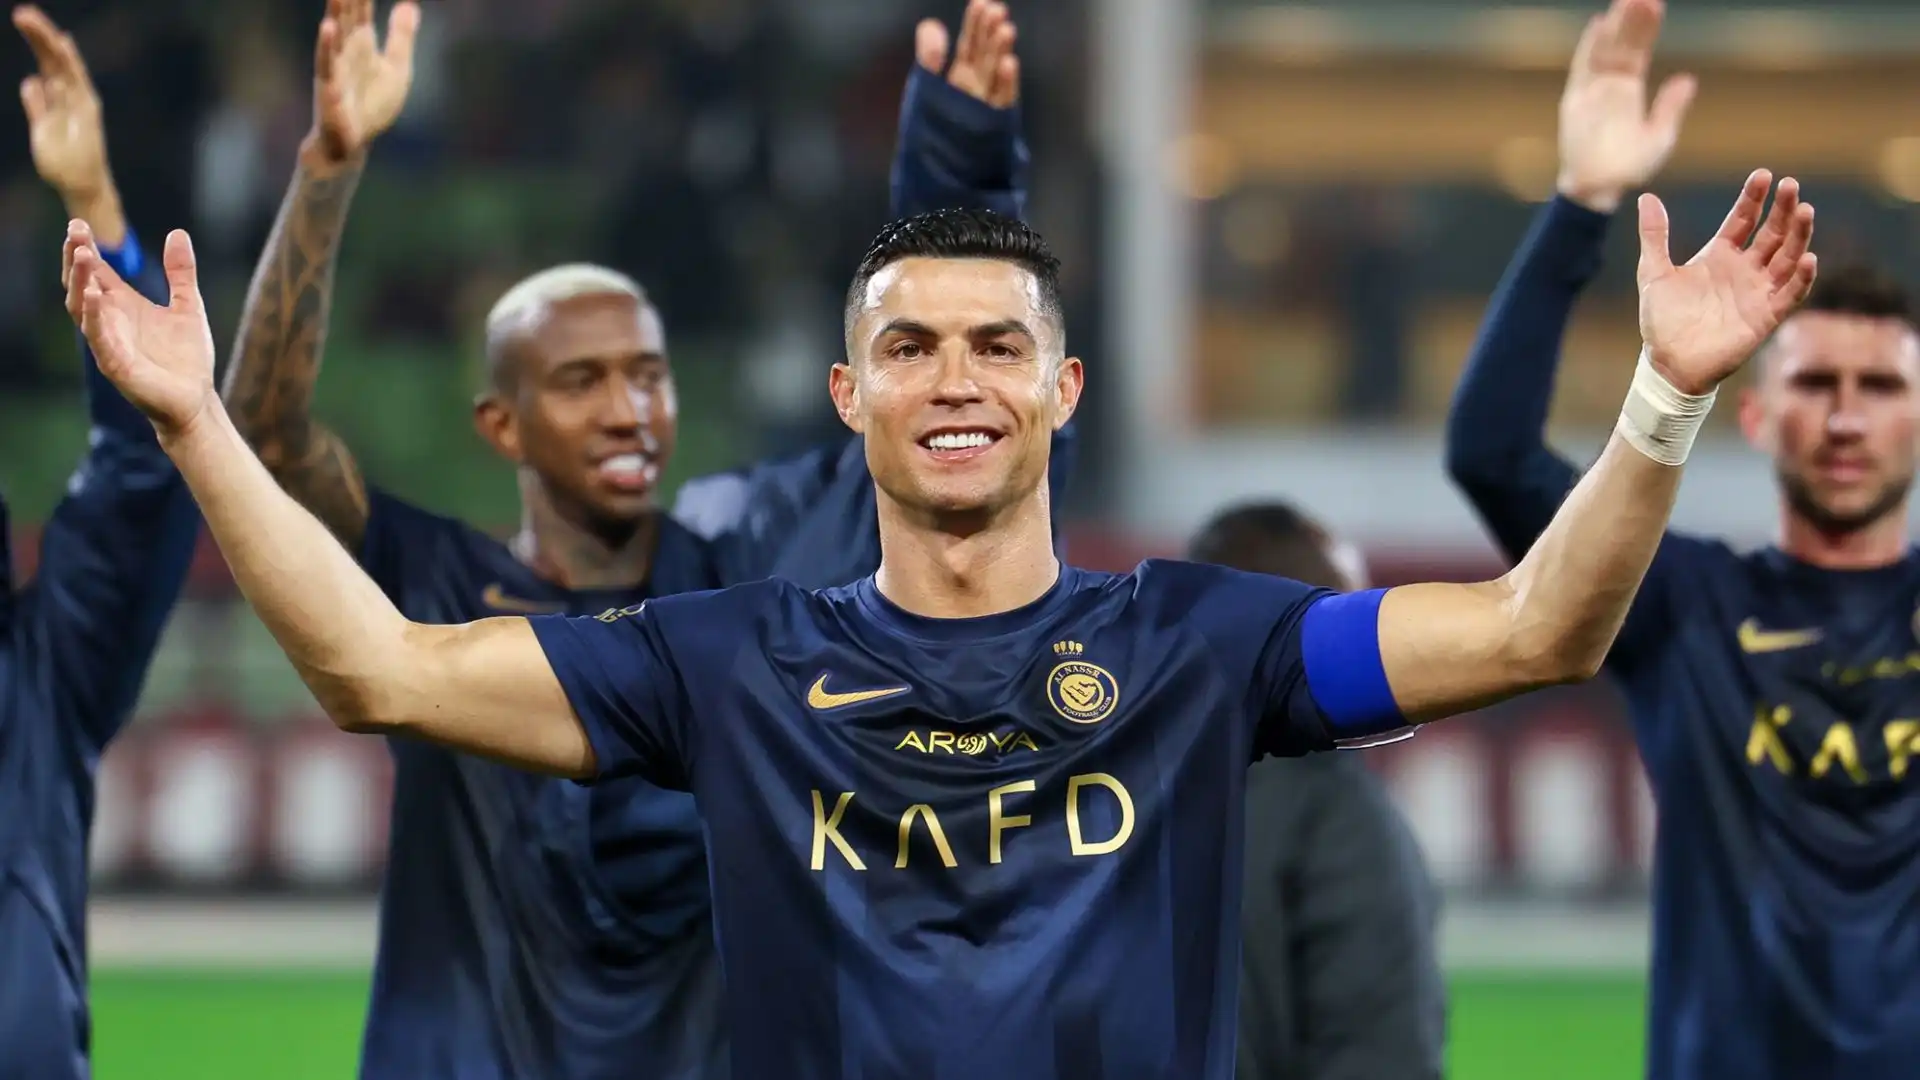 Dopo la partita, Ronaldo su Instagram ha pubblicato un post pieno di orgoglio